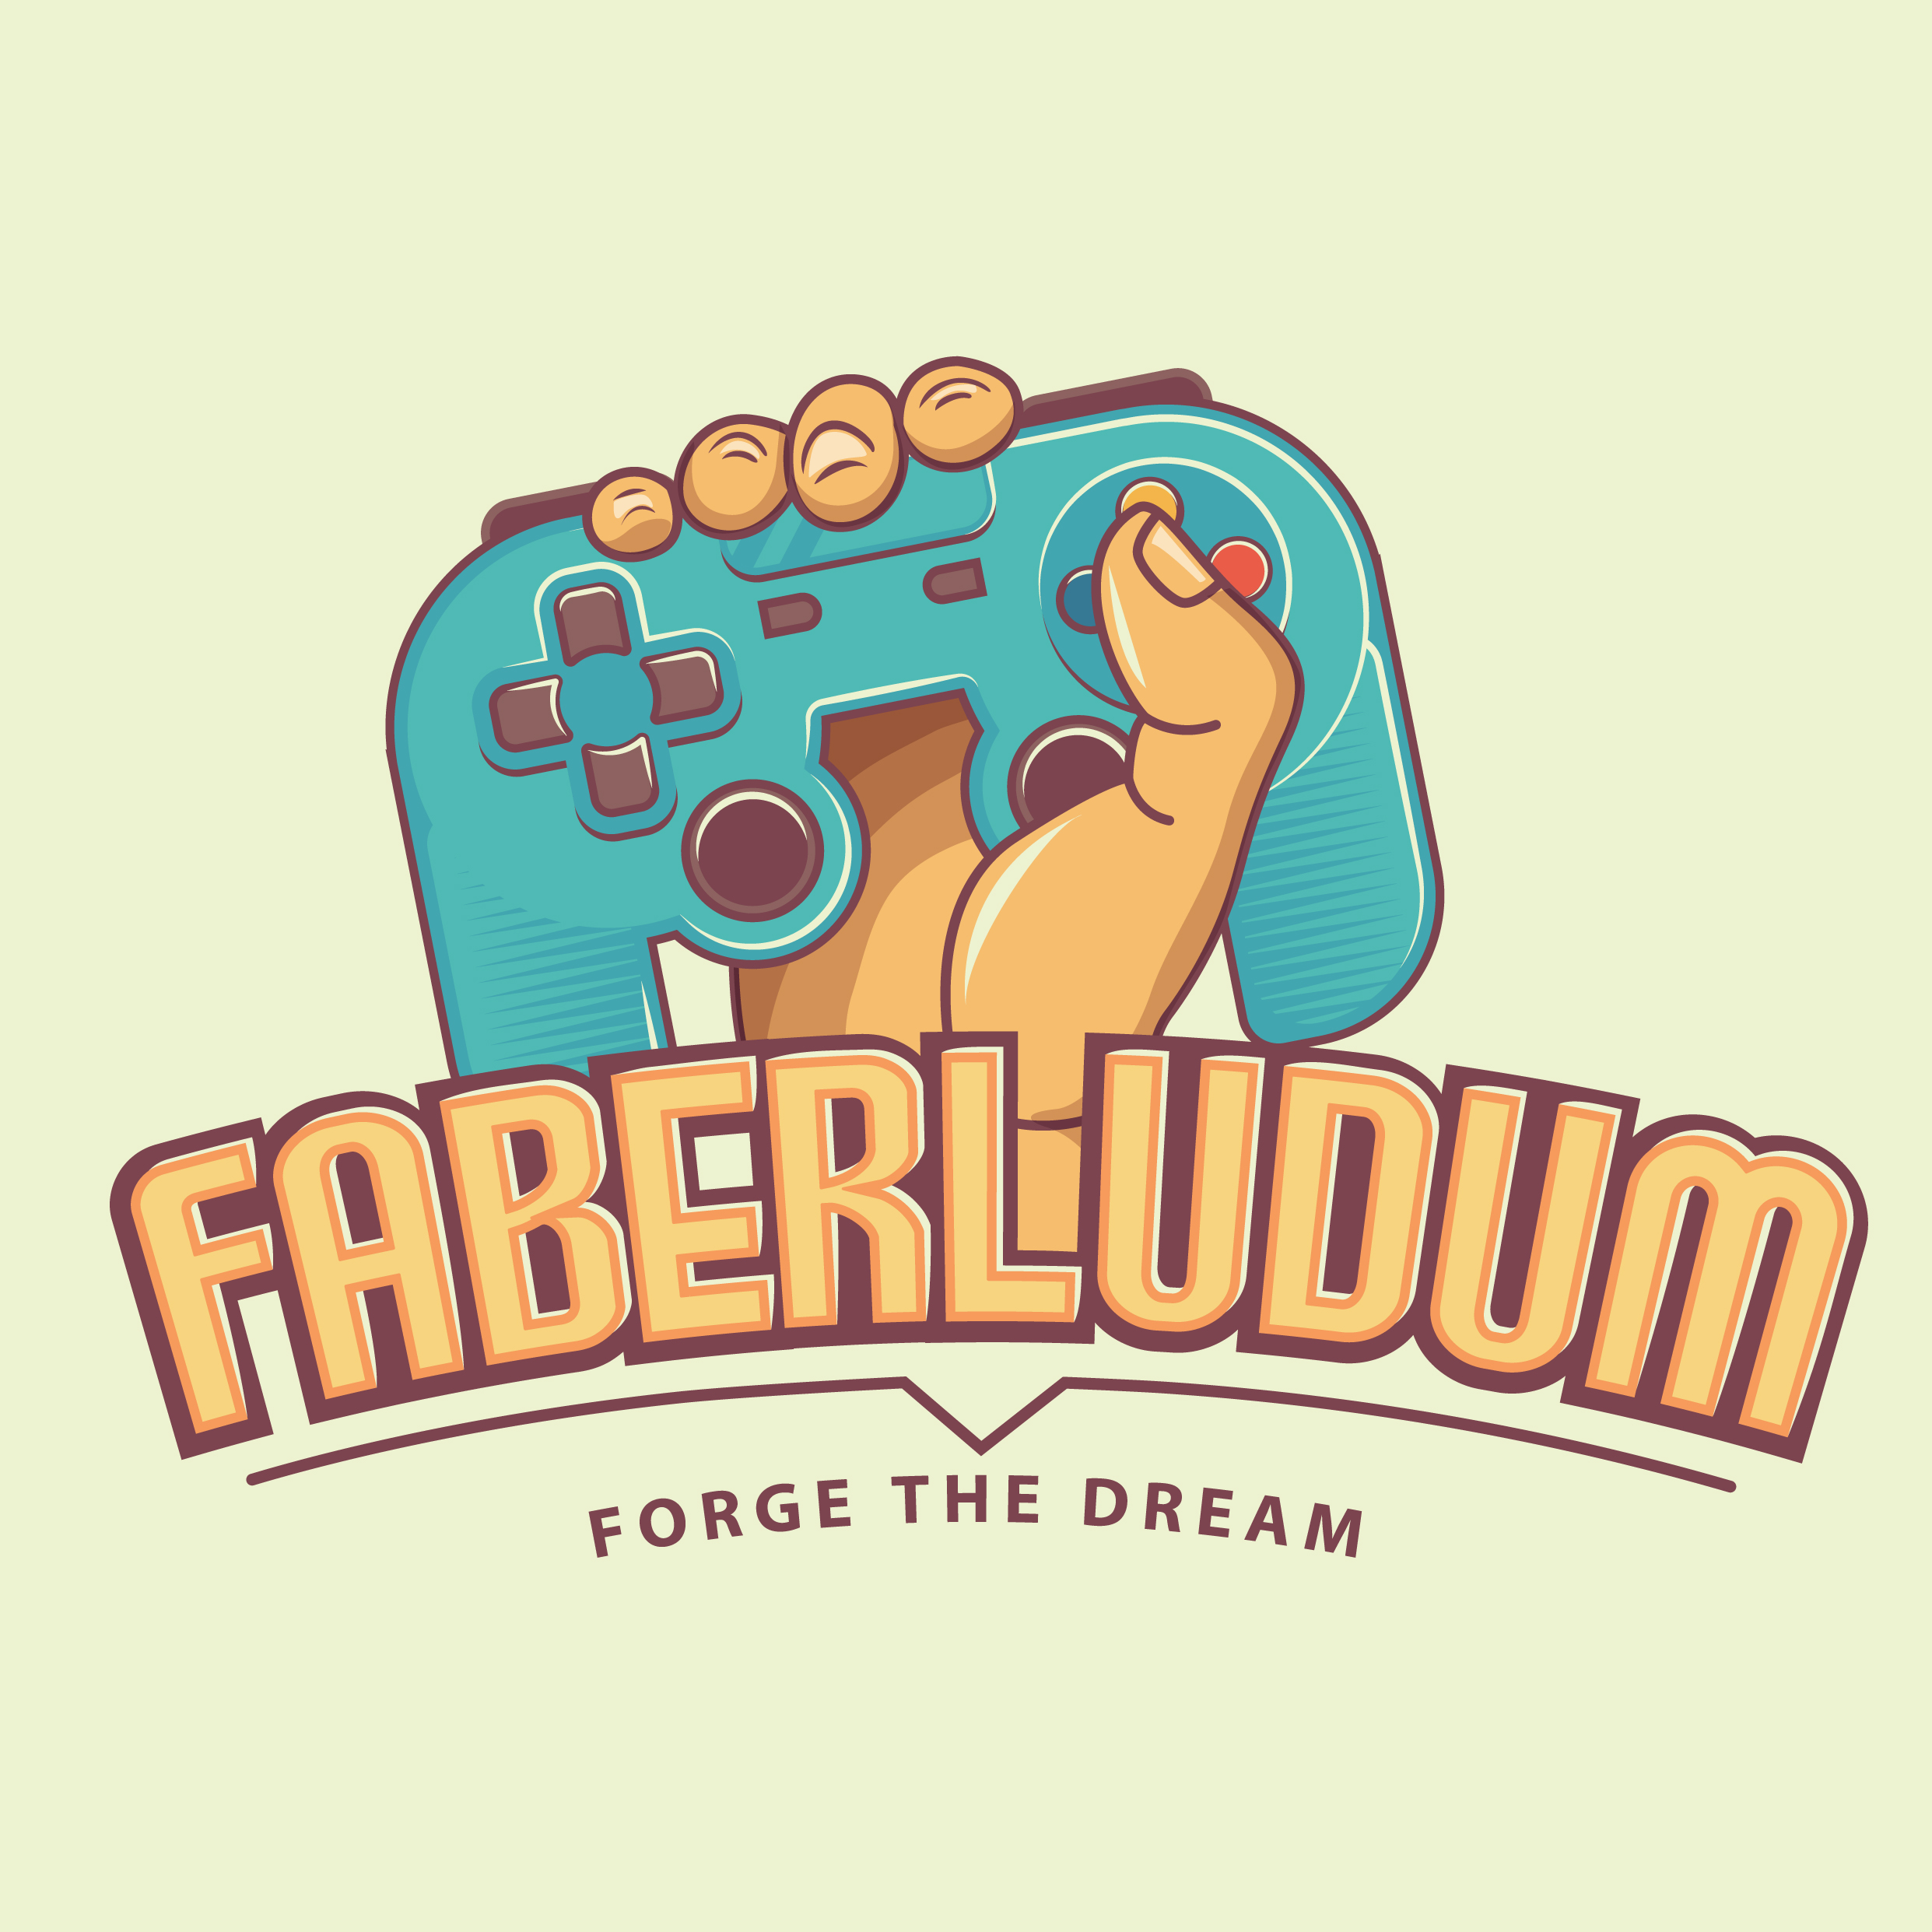 FaberLudum